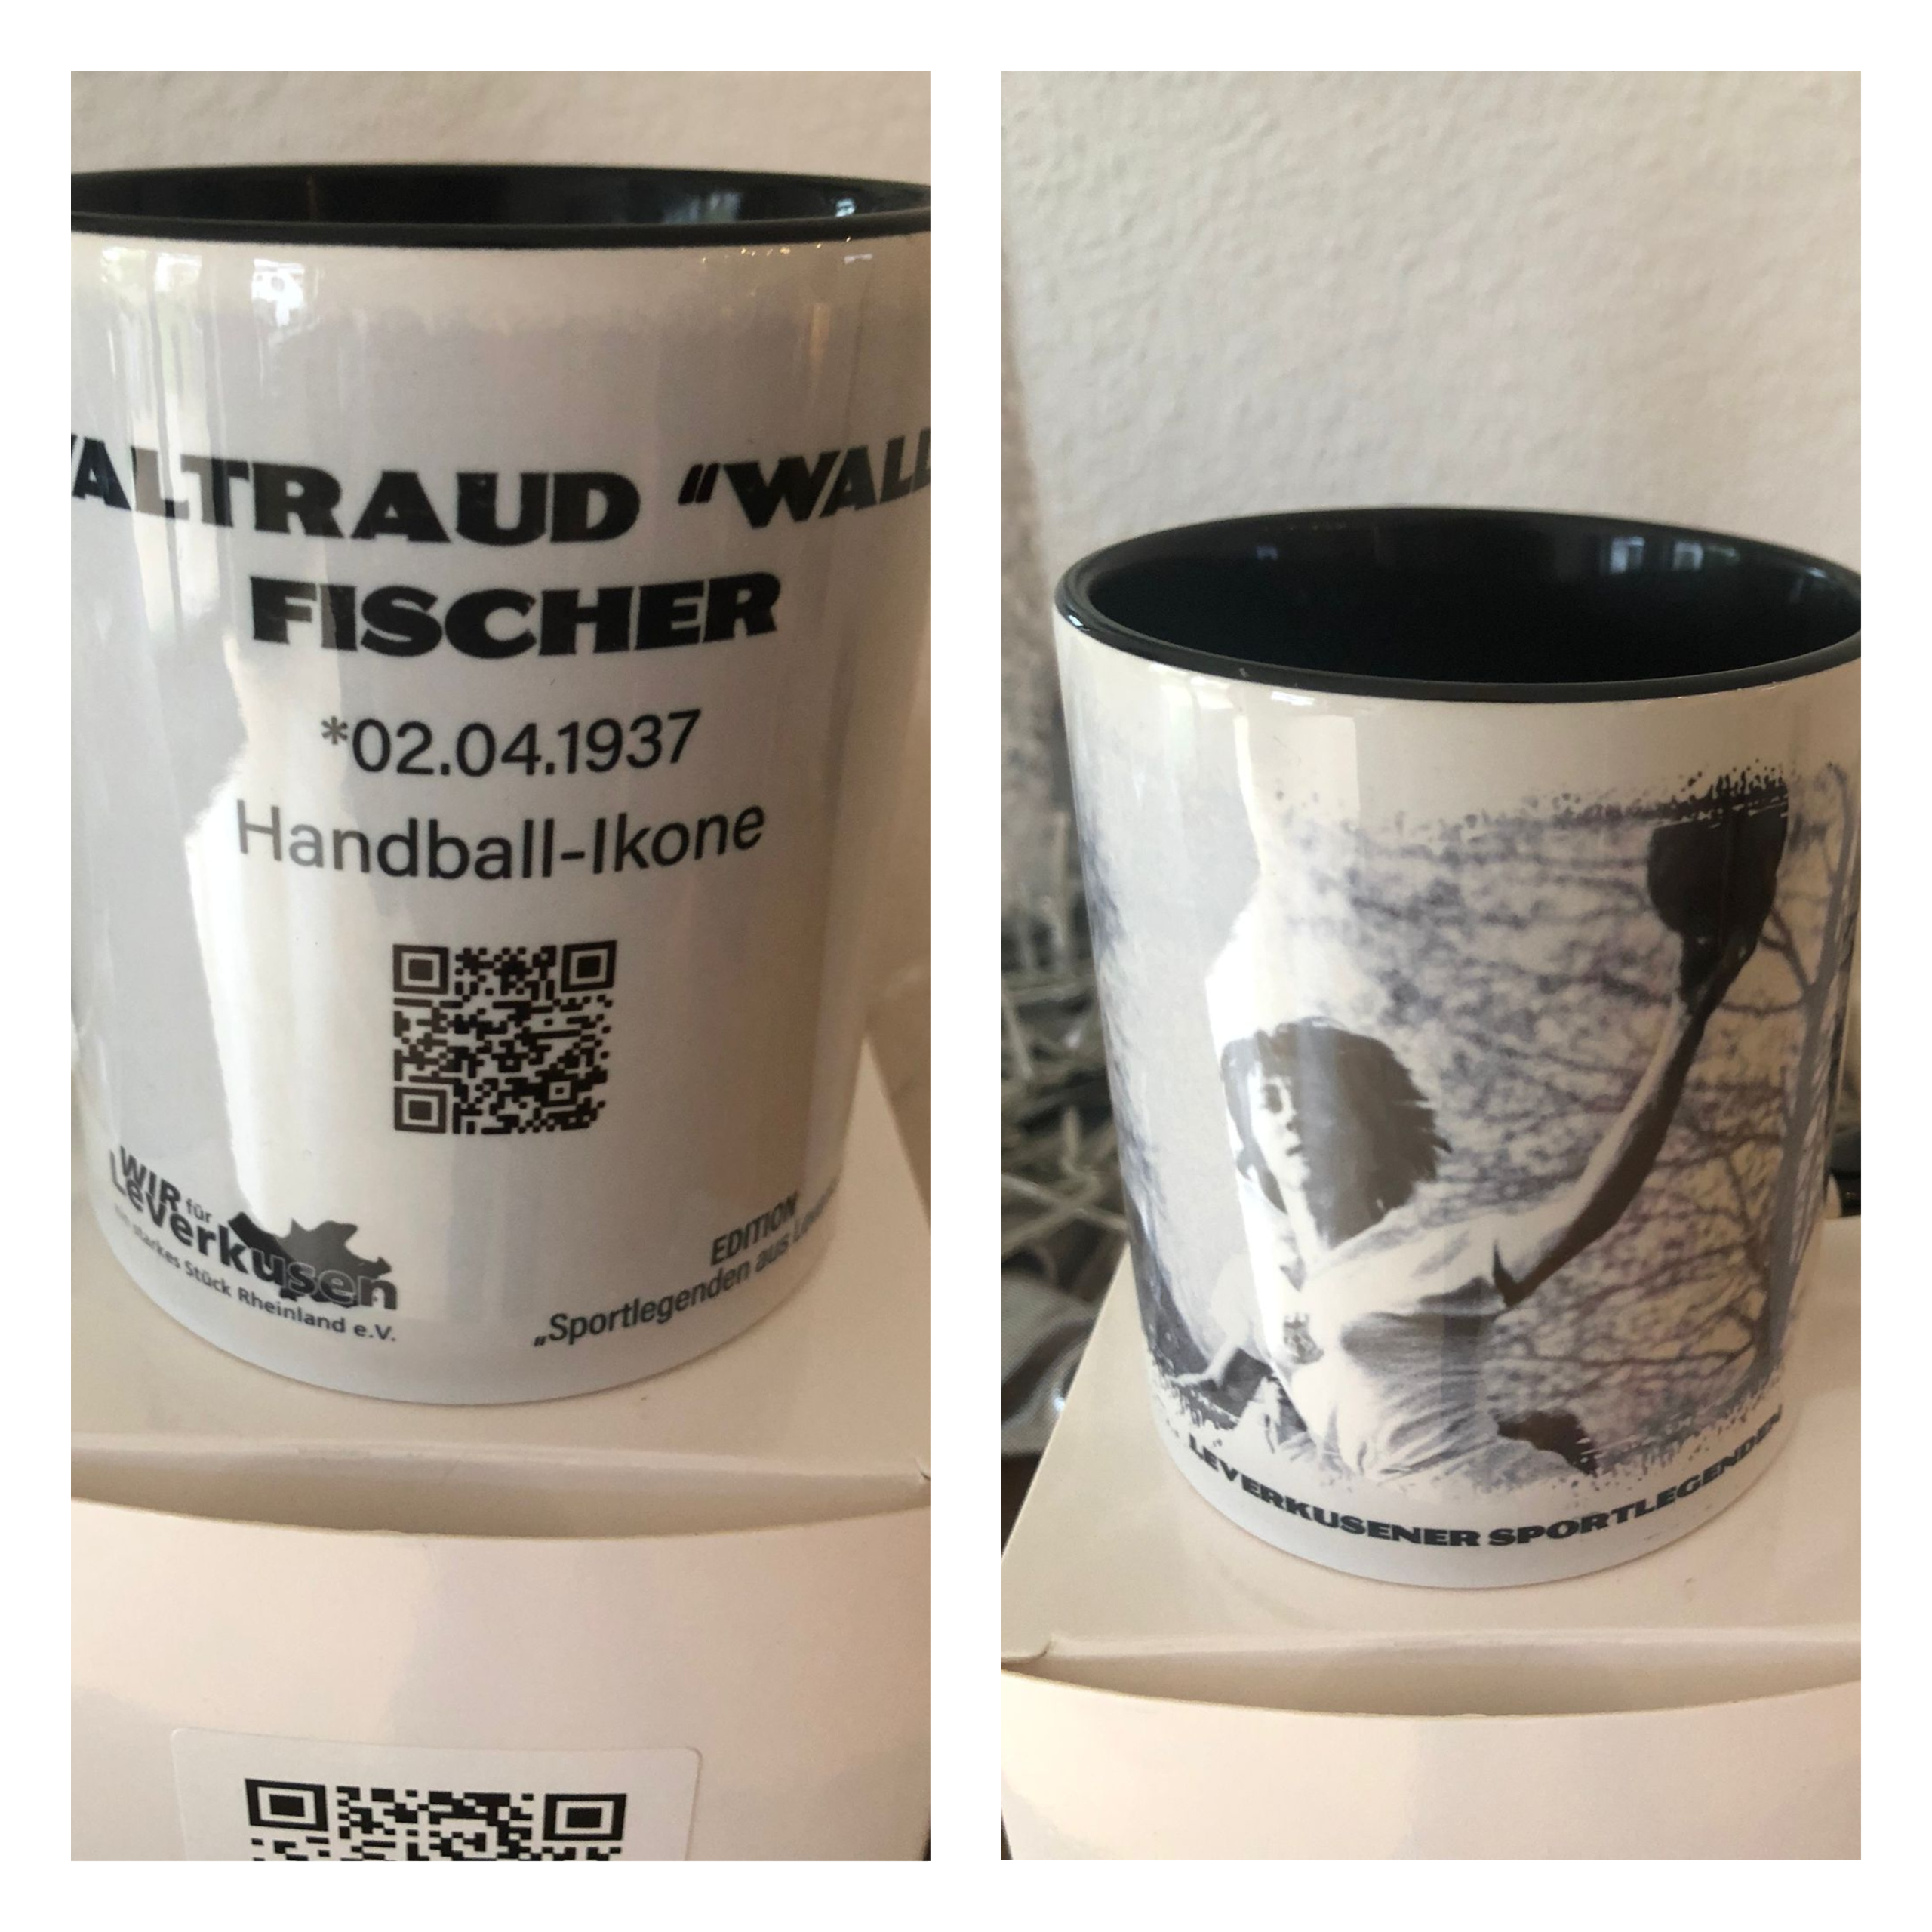 Tasse Waltraud "Walli" Fischer 10€